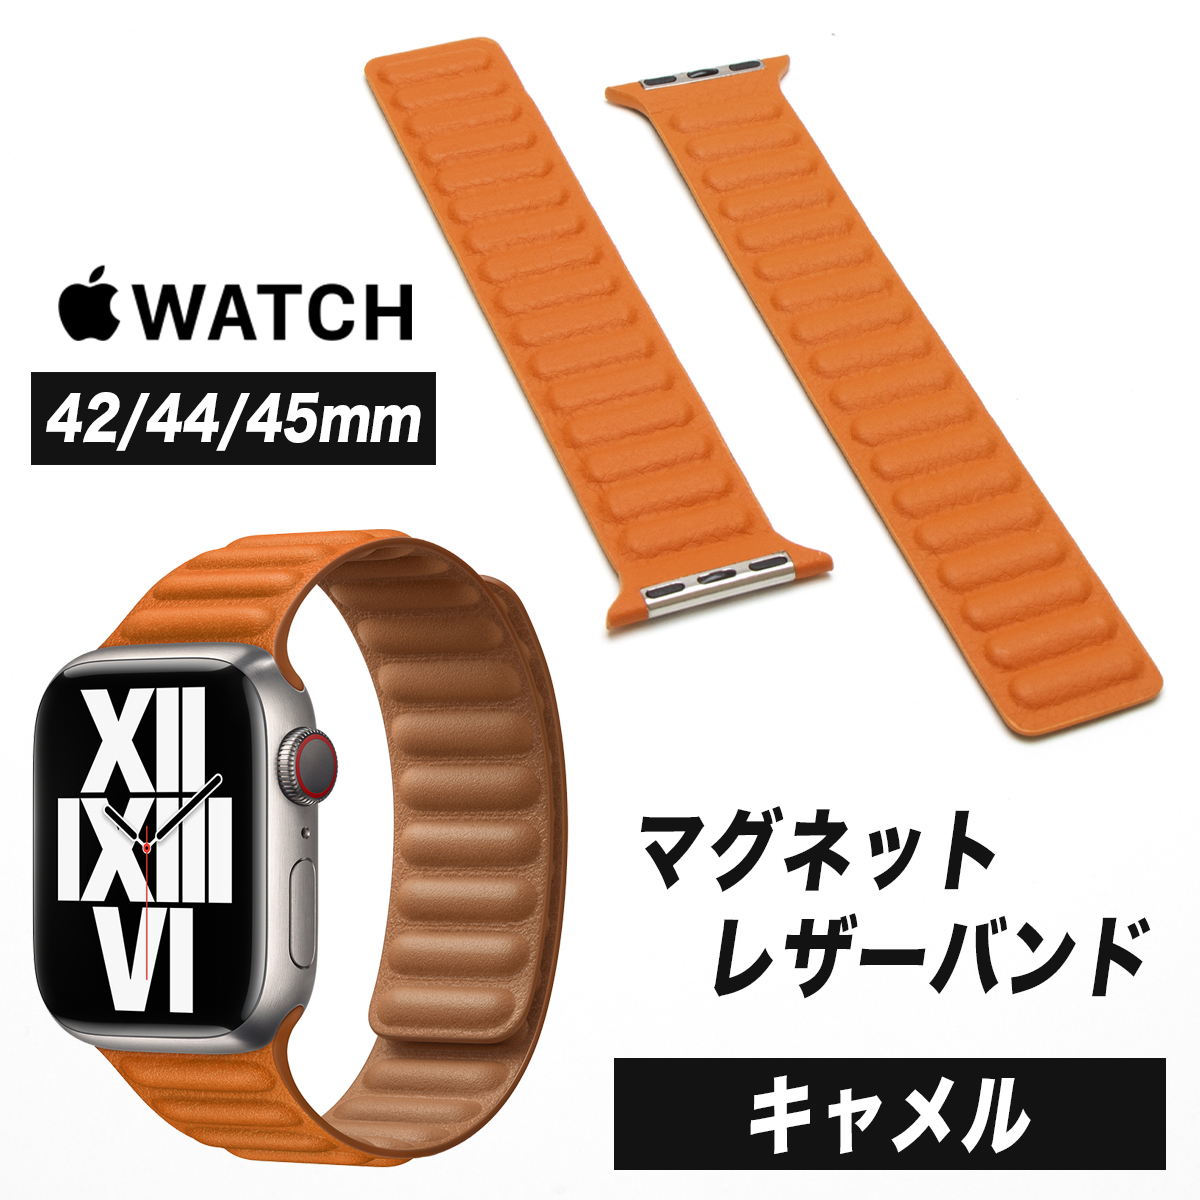 ハンドメイド サドルレザー交換用アップルウォッチ Apple Watch ベルト 